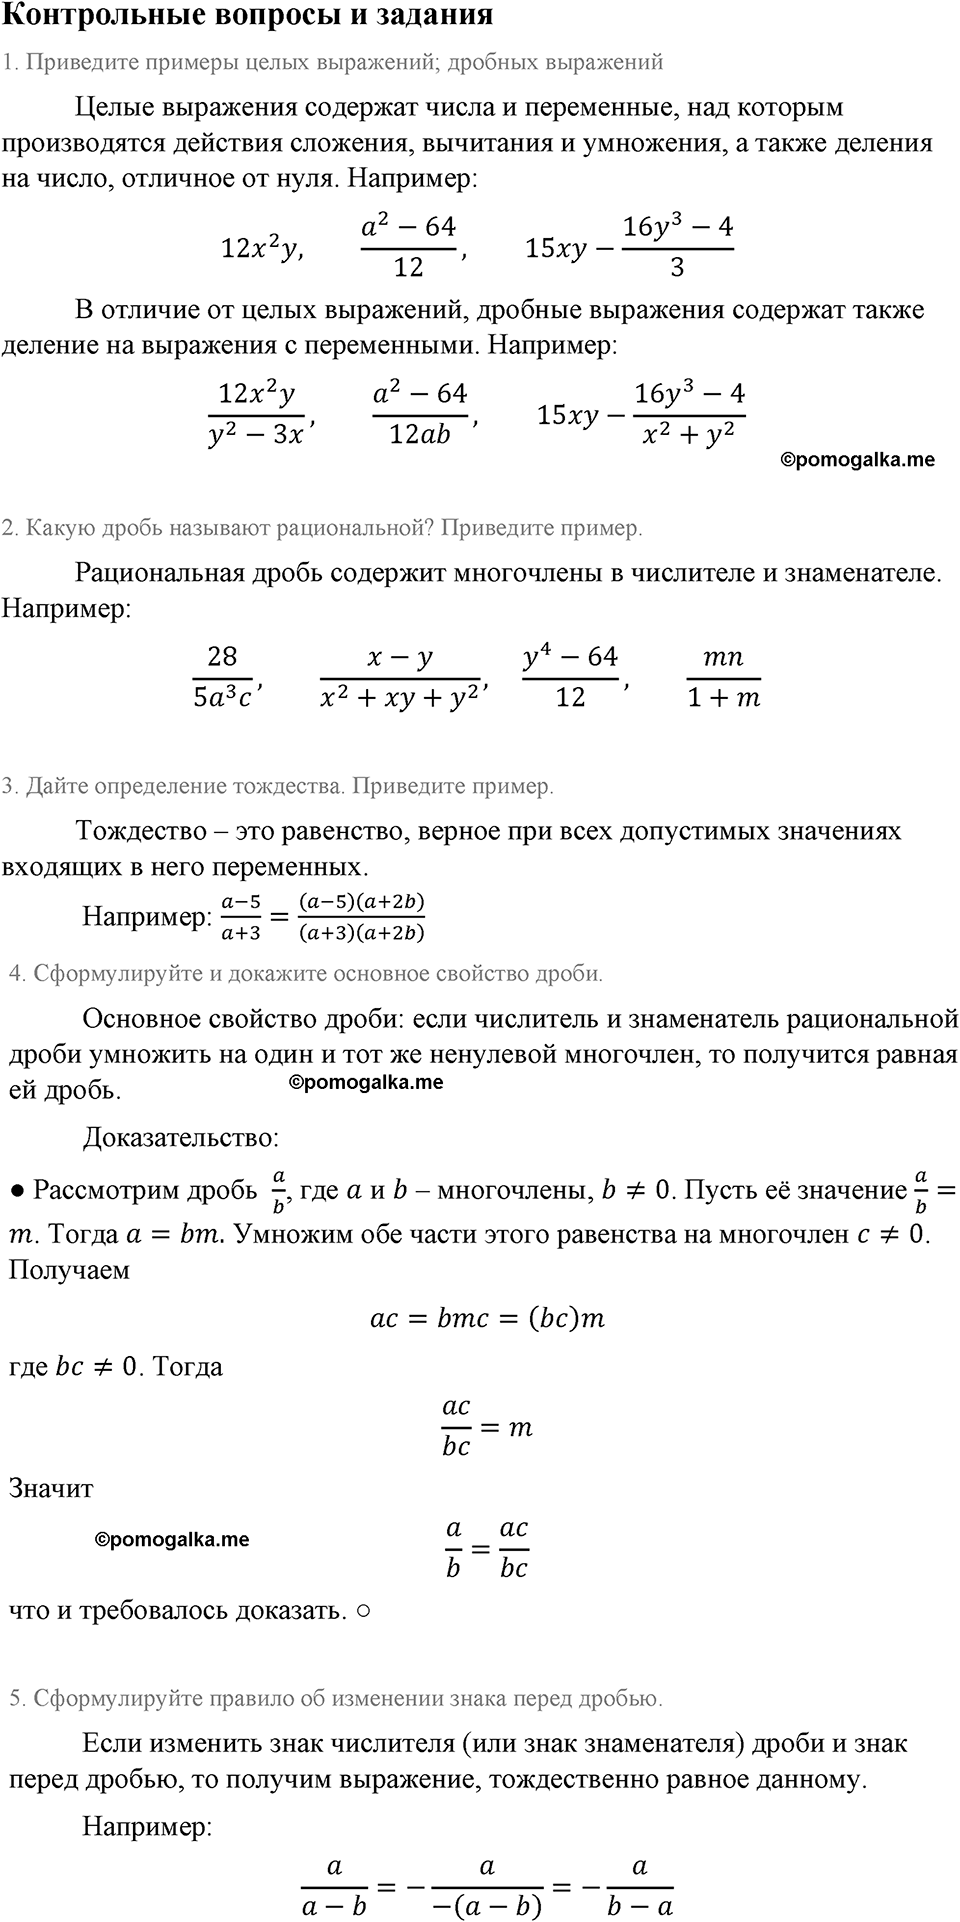 страница 17 контрольные вопросы алгебра 8 класс Макарычев 2013 год